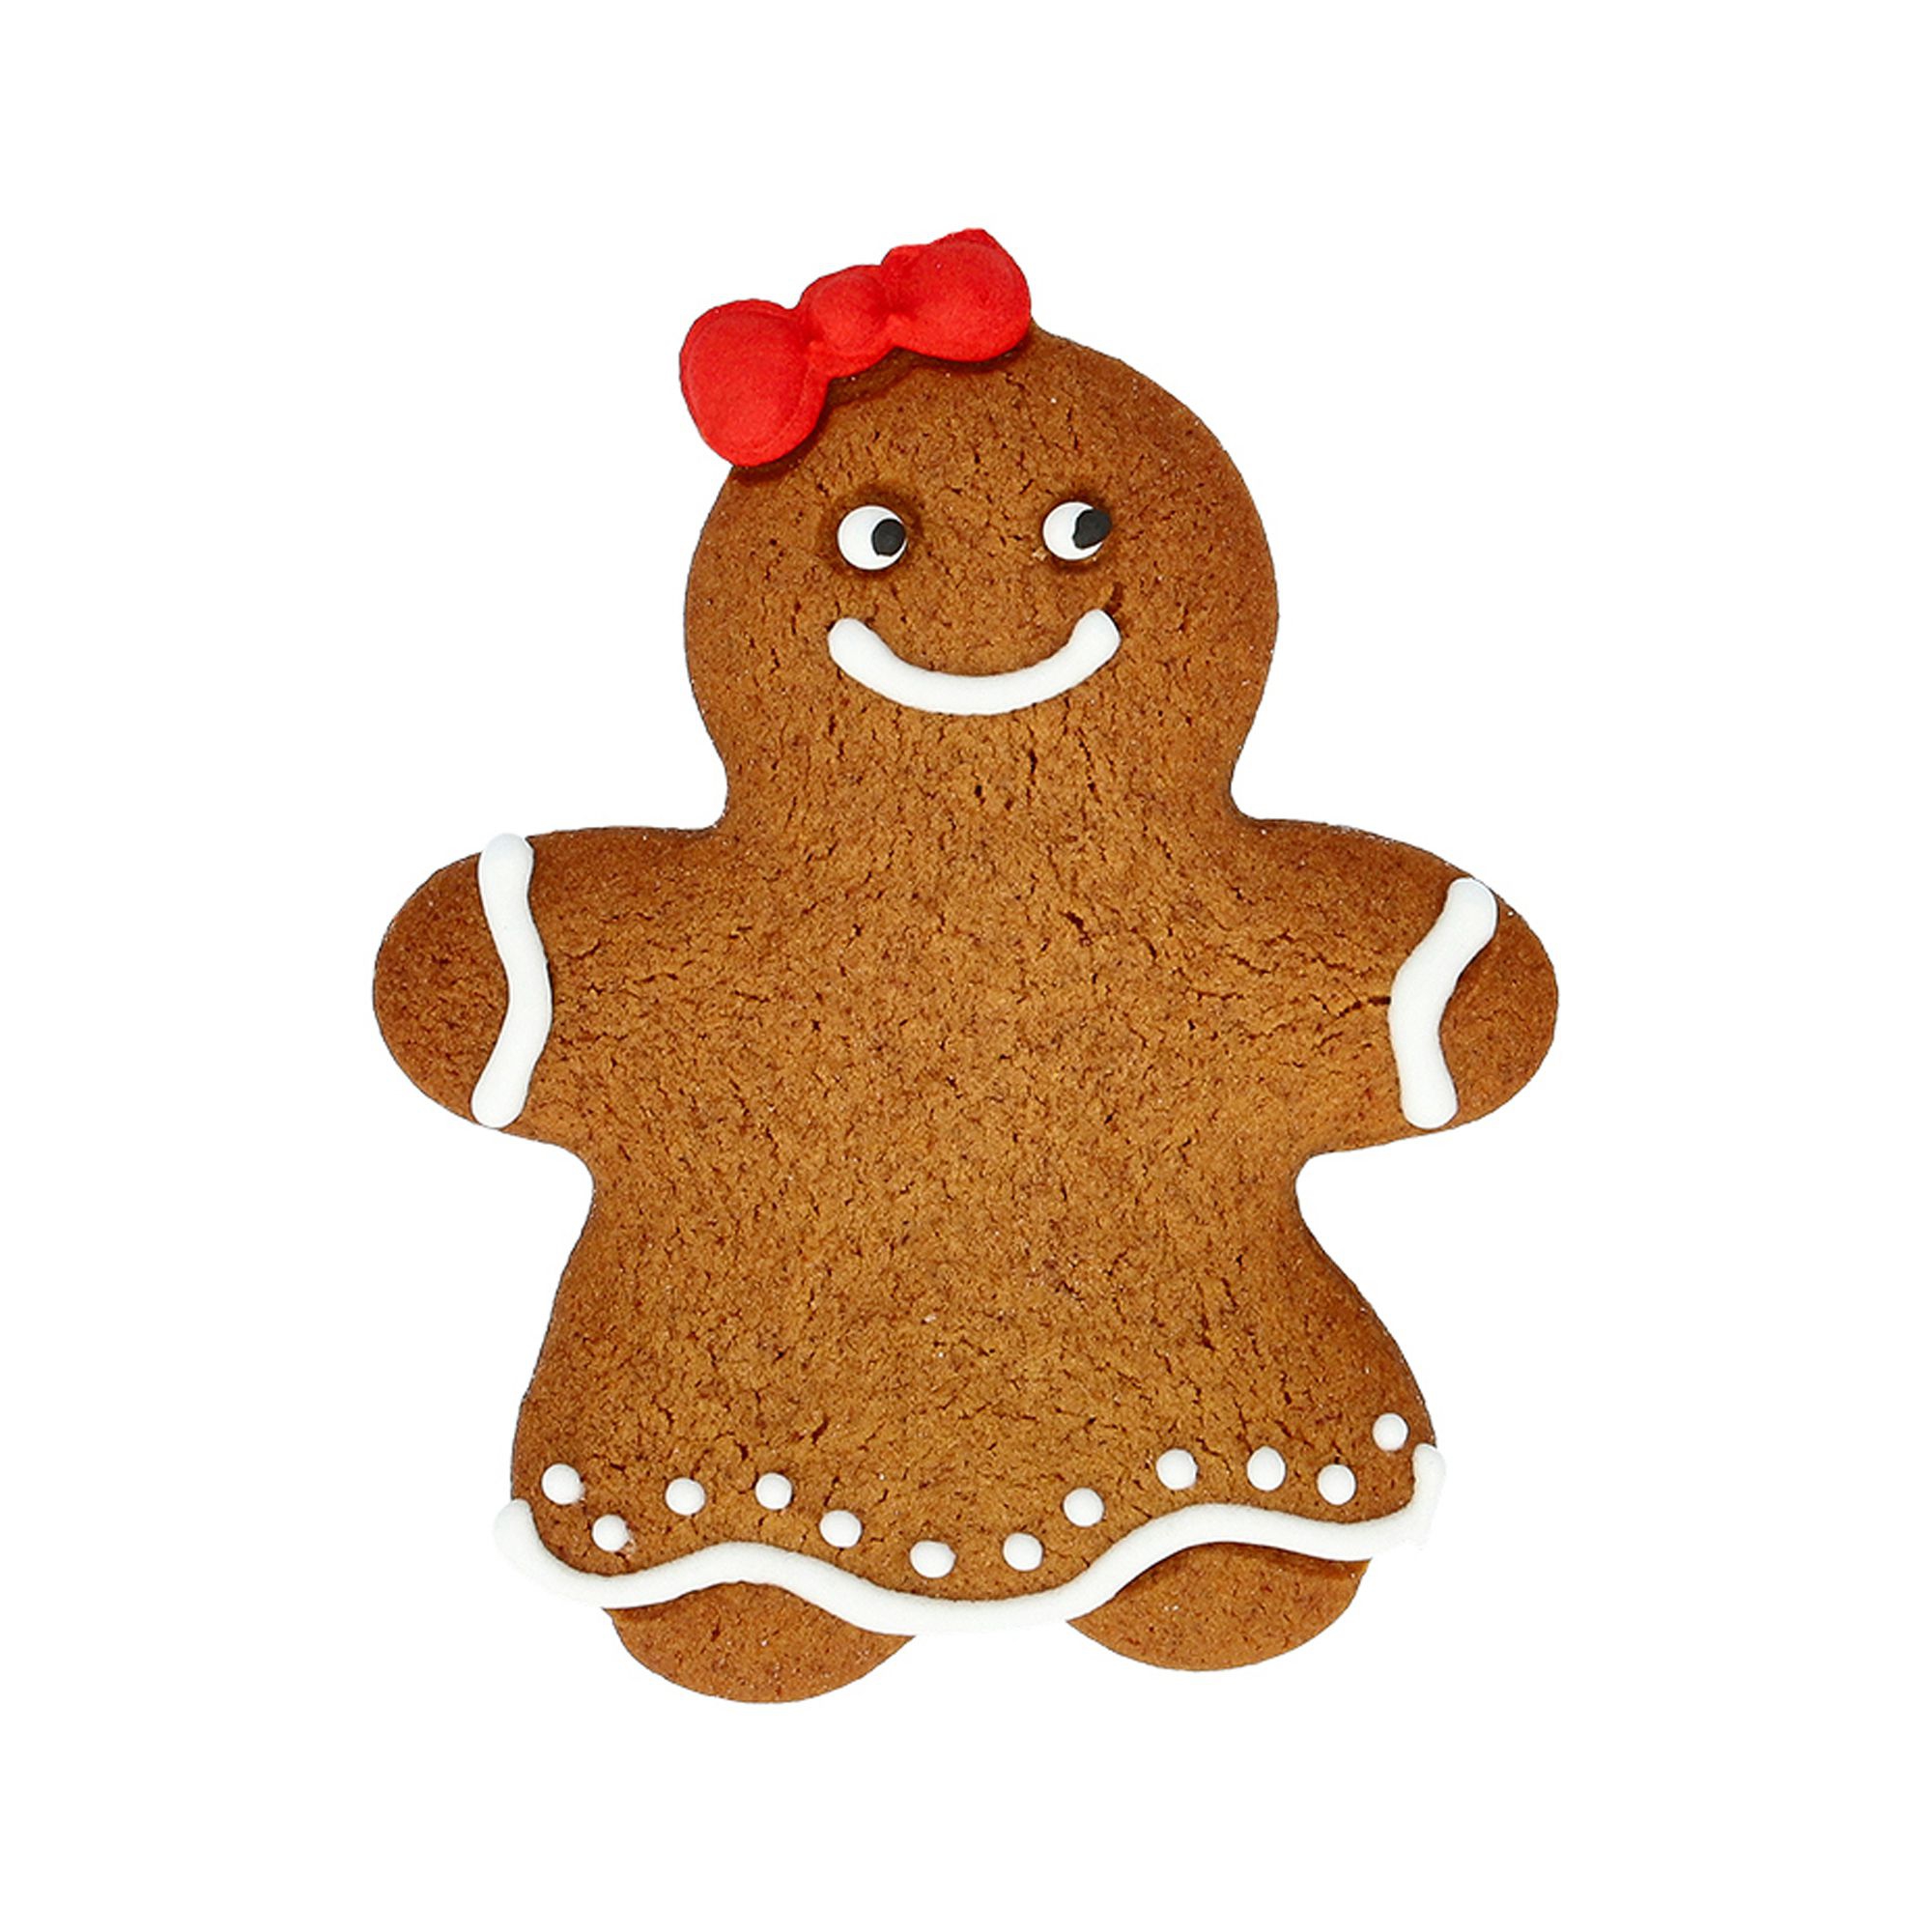 Birkmann - cookie cutter - Gingerbread woman 8cm